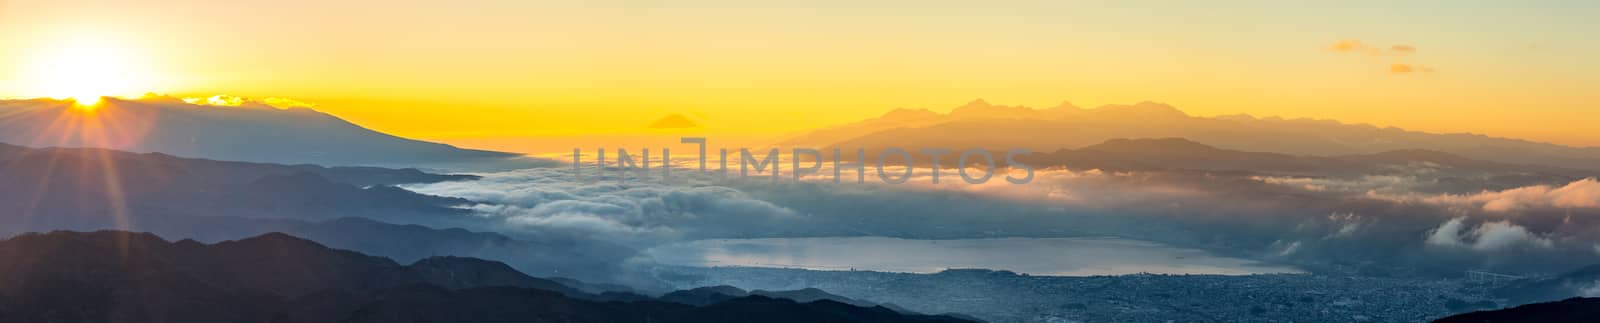 Mount Fuji Sunrise by vichie81